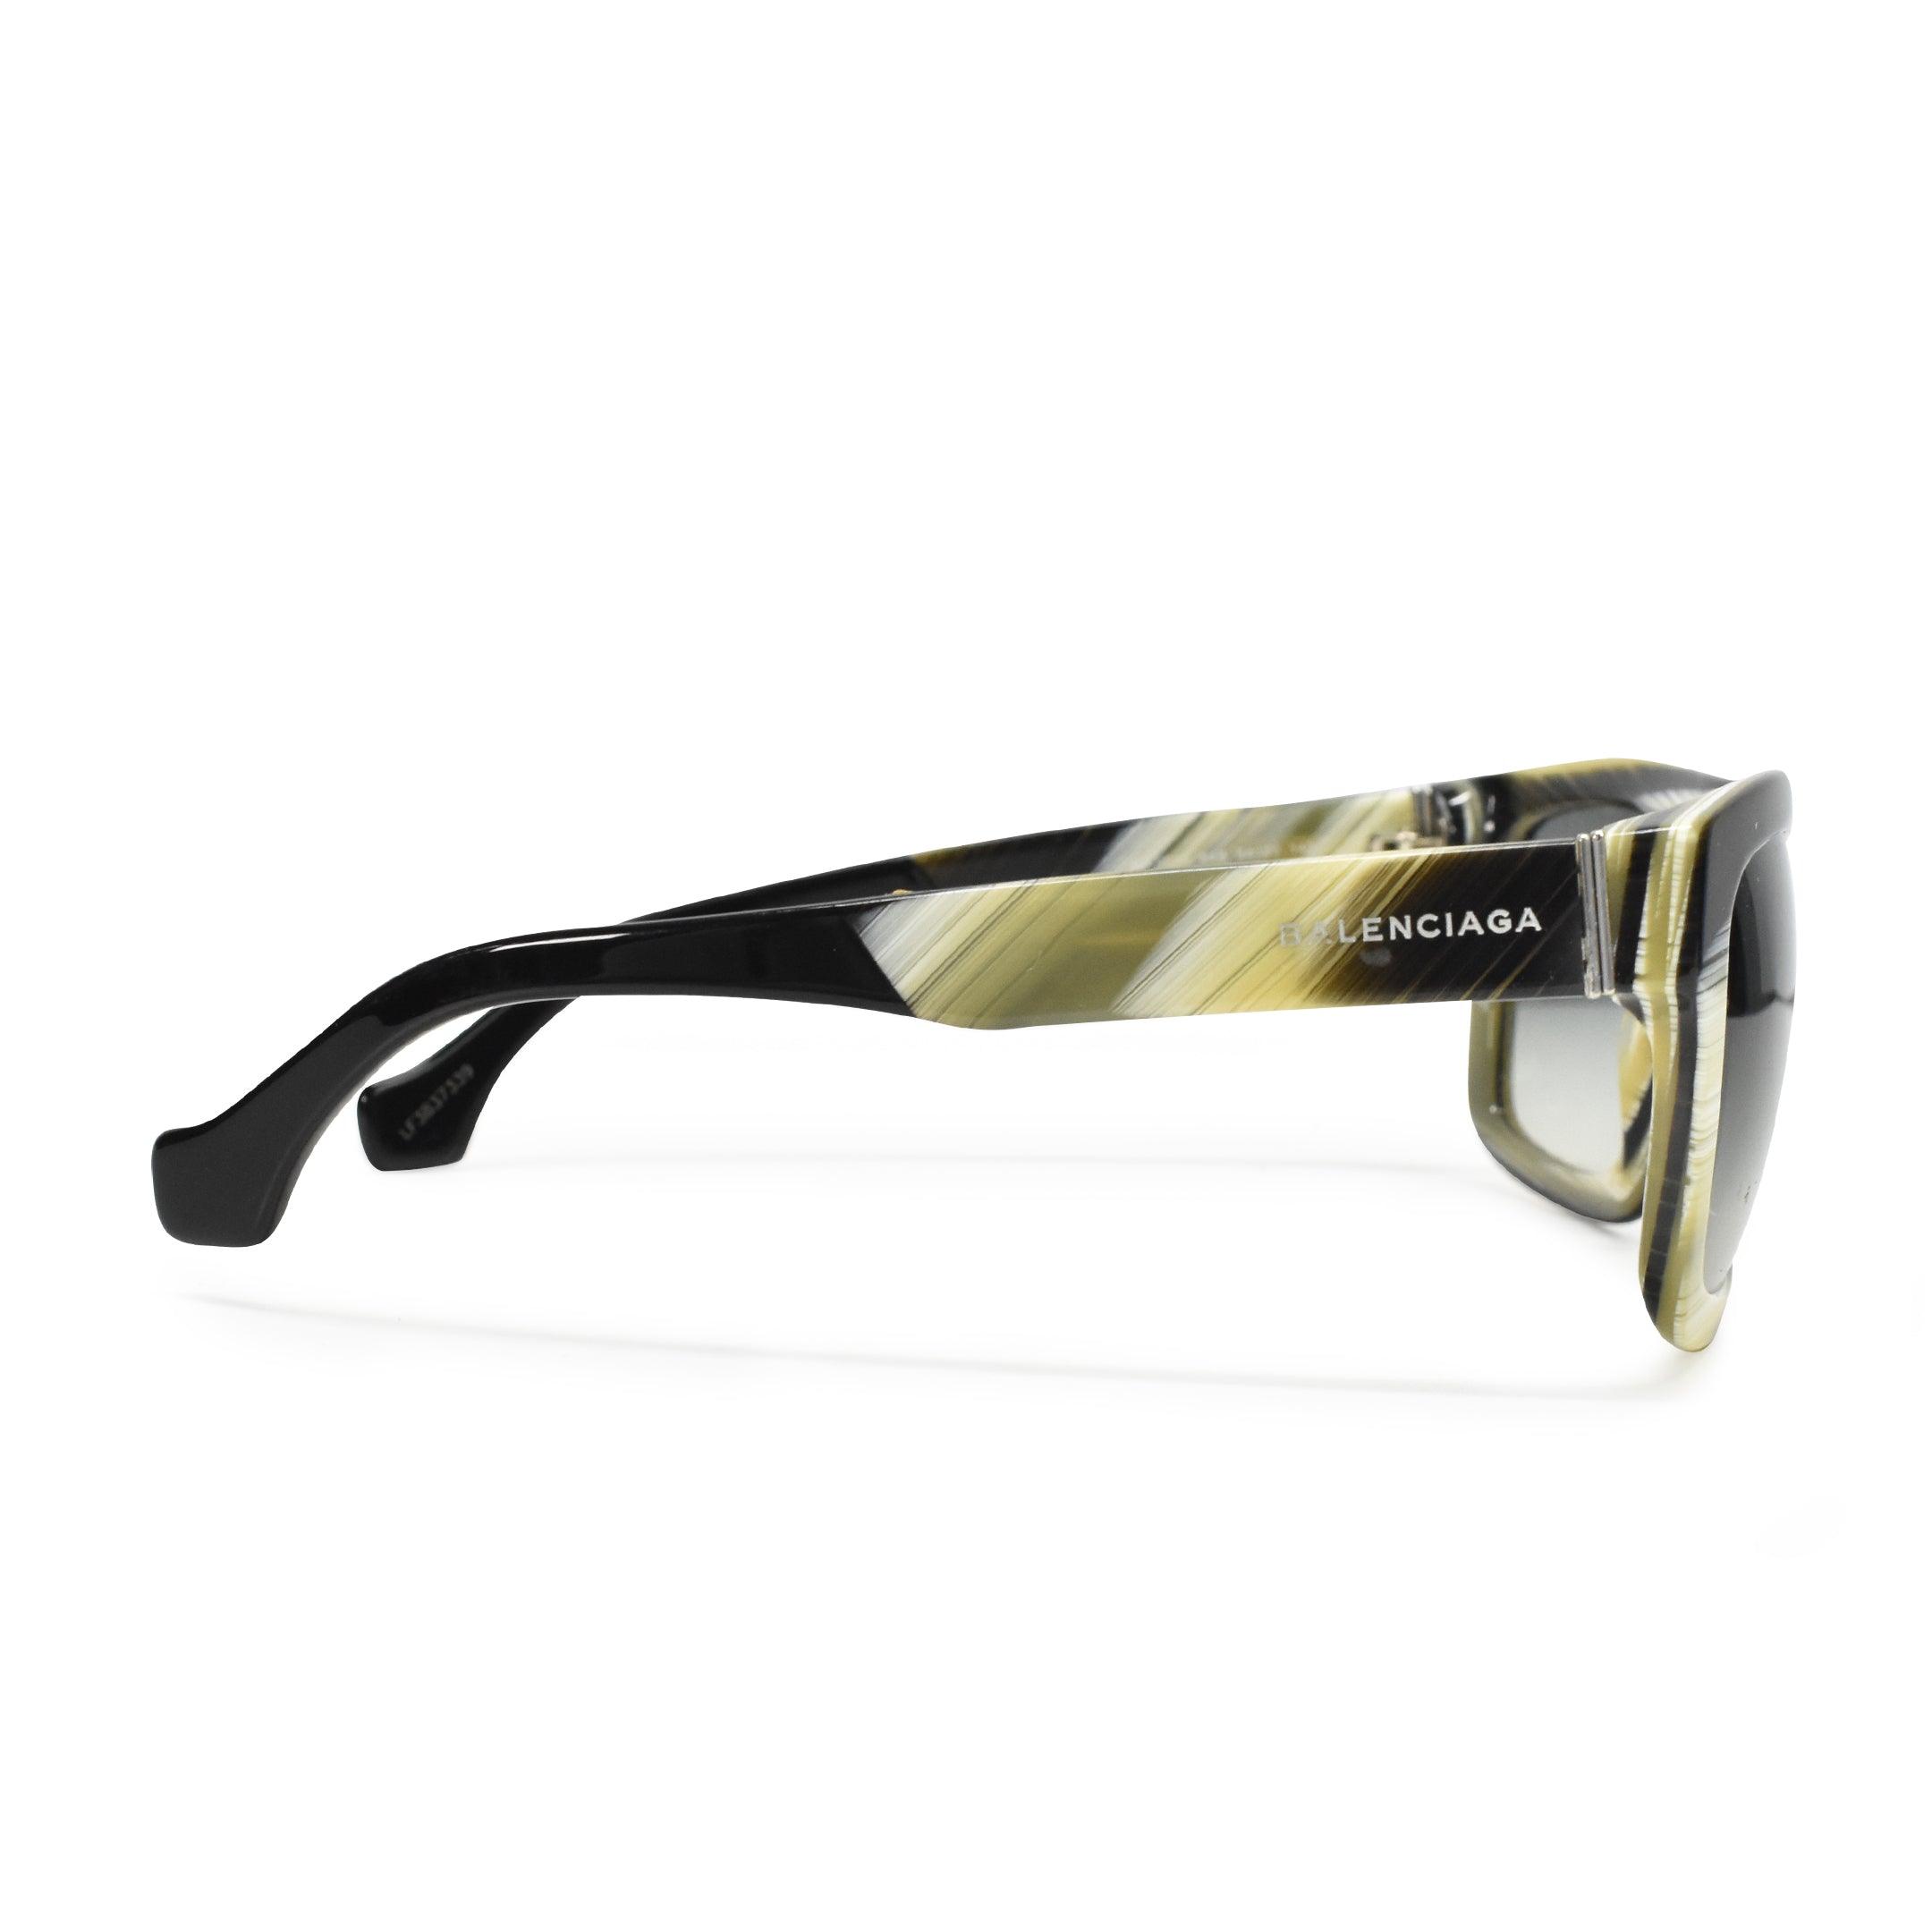 Balenciaga Sunglasses - Fashionably Yours